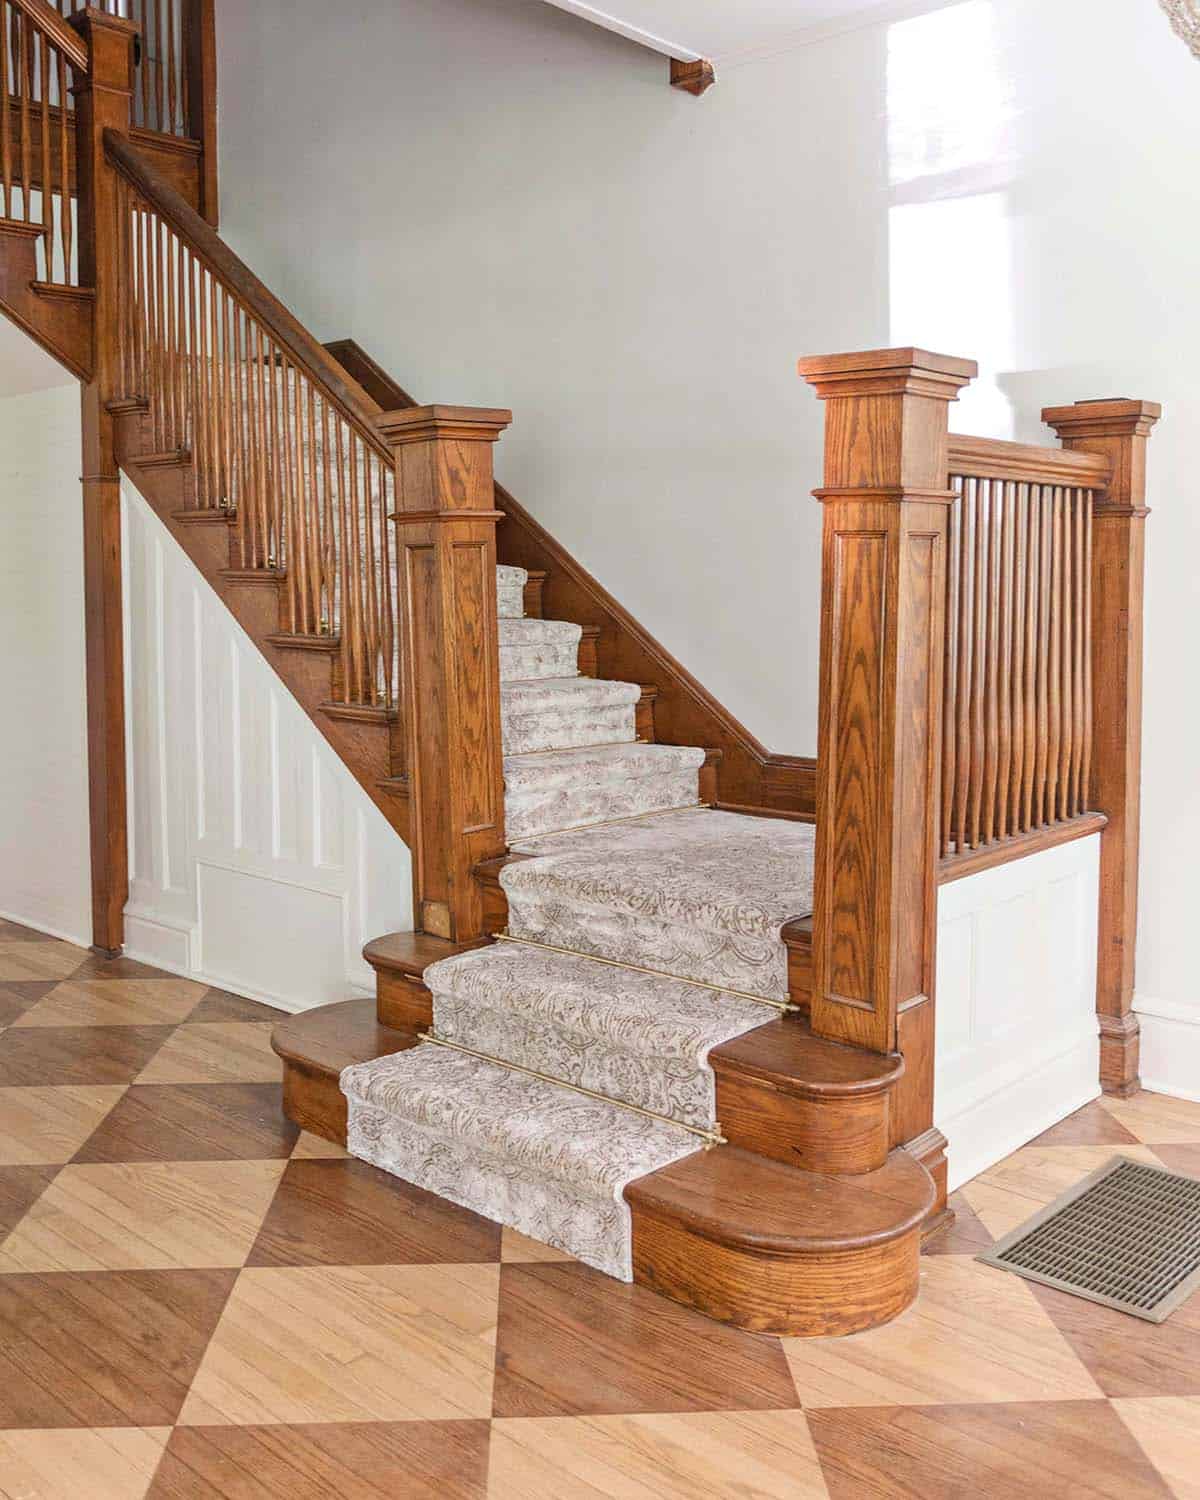 Stair Runner Carpet Updates - A Beautiful Mess